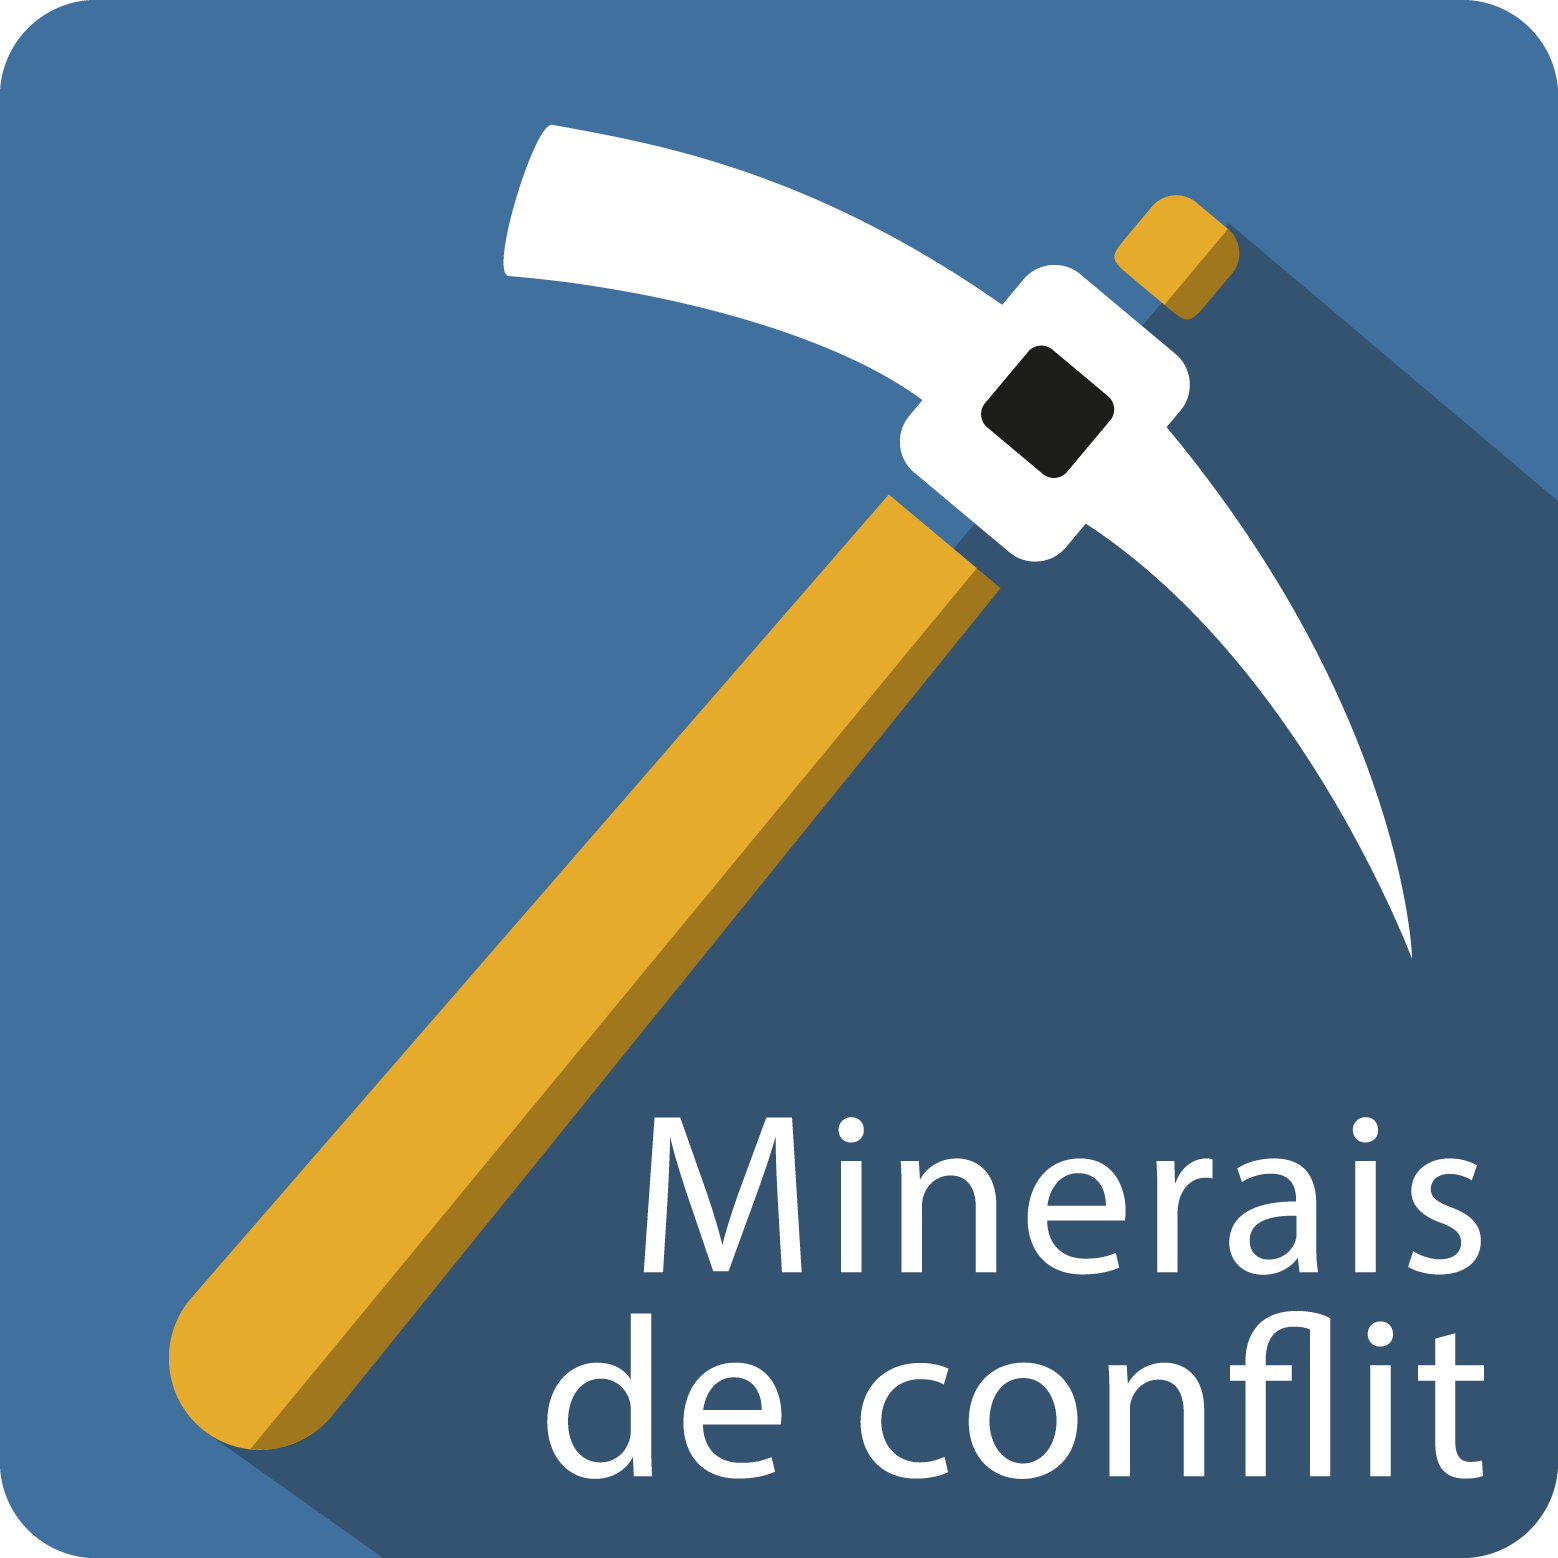 Minerais de conflit